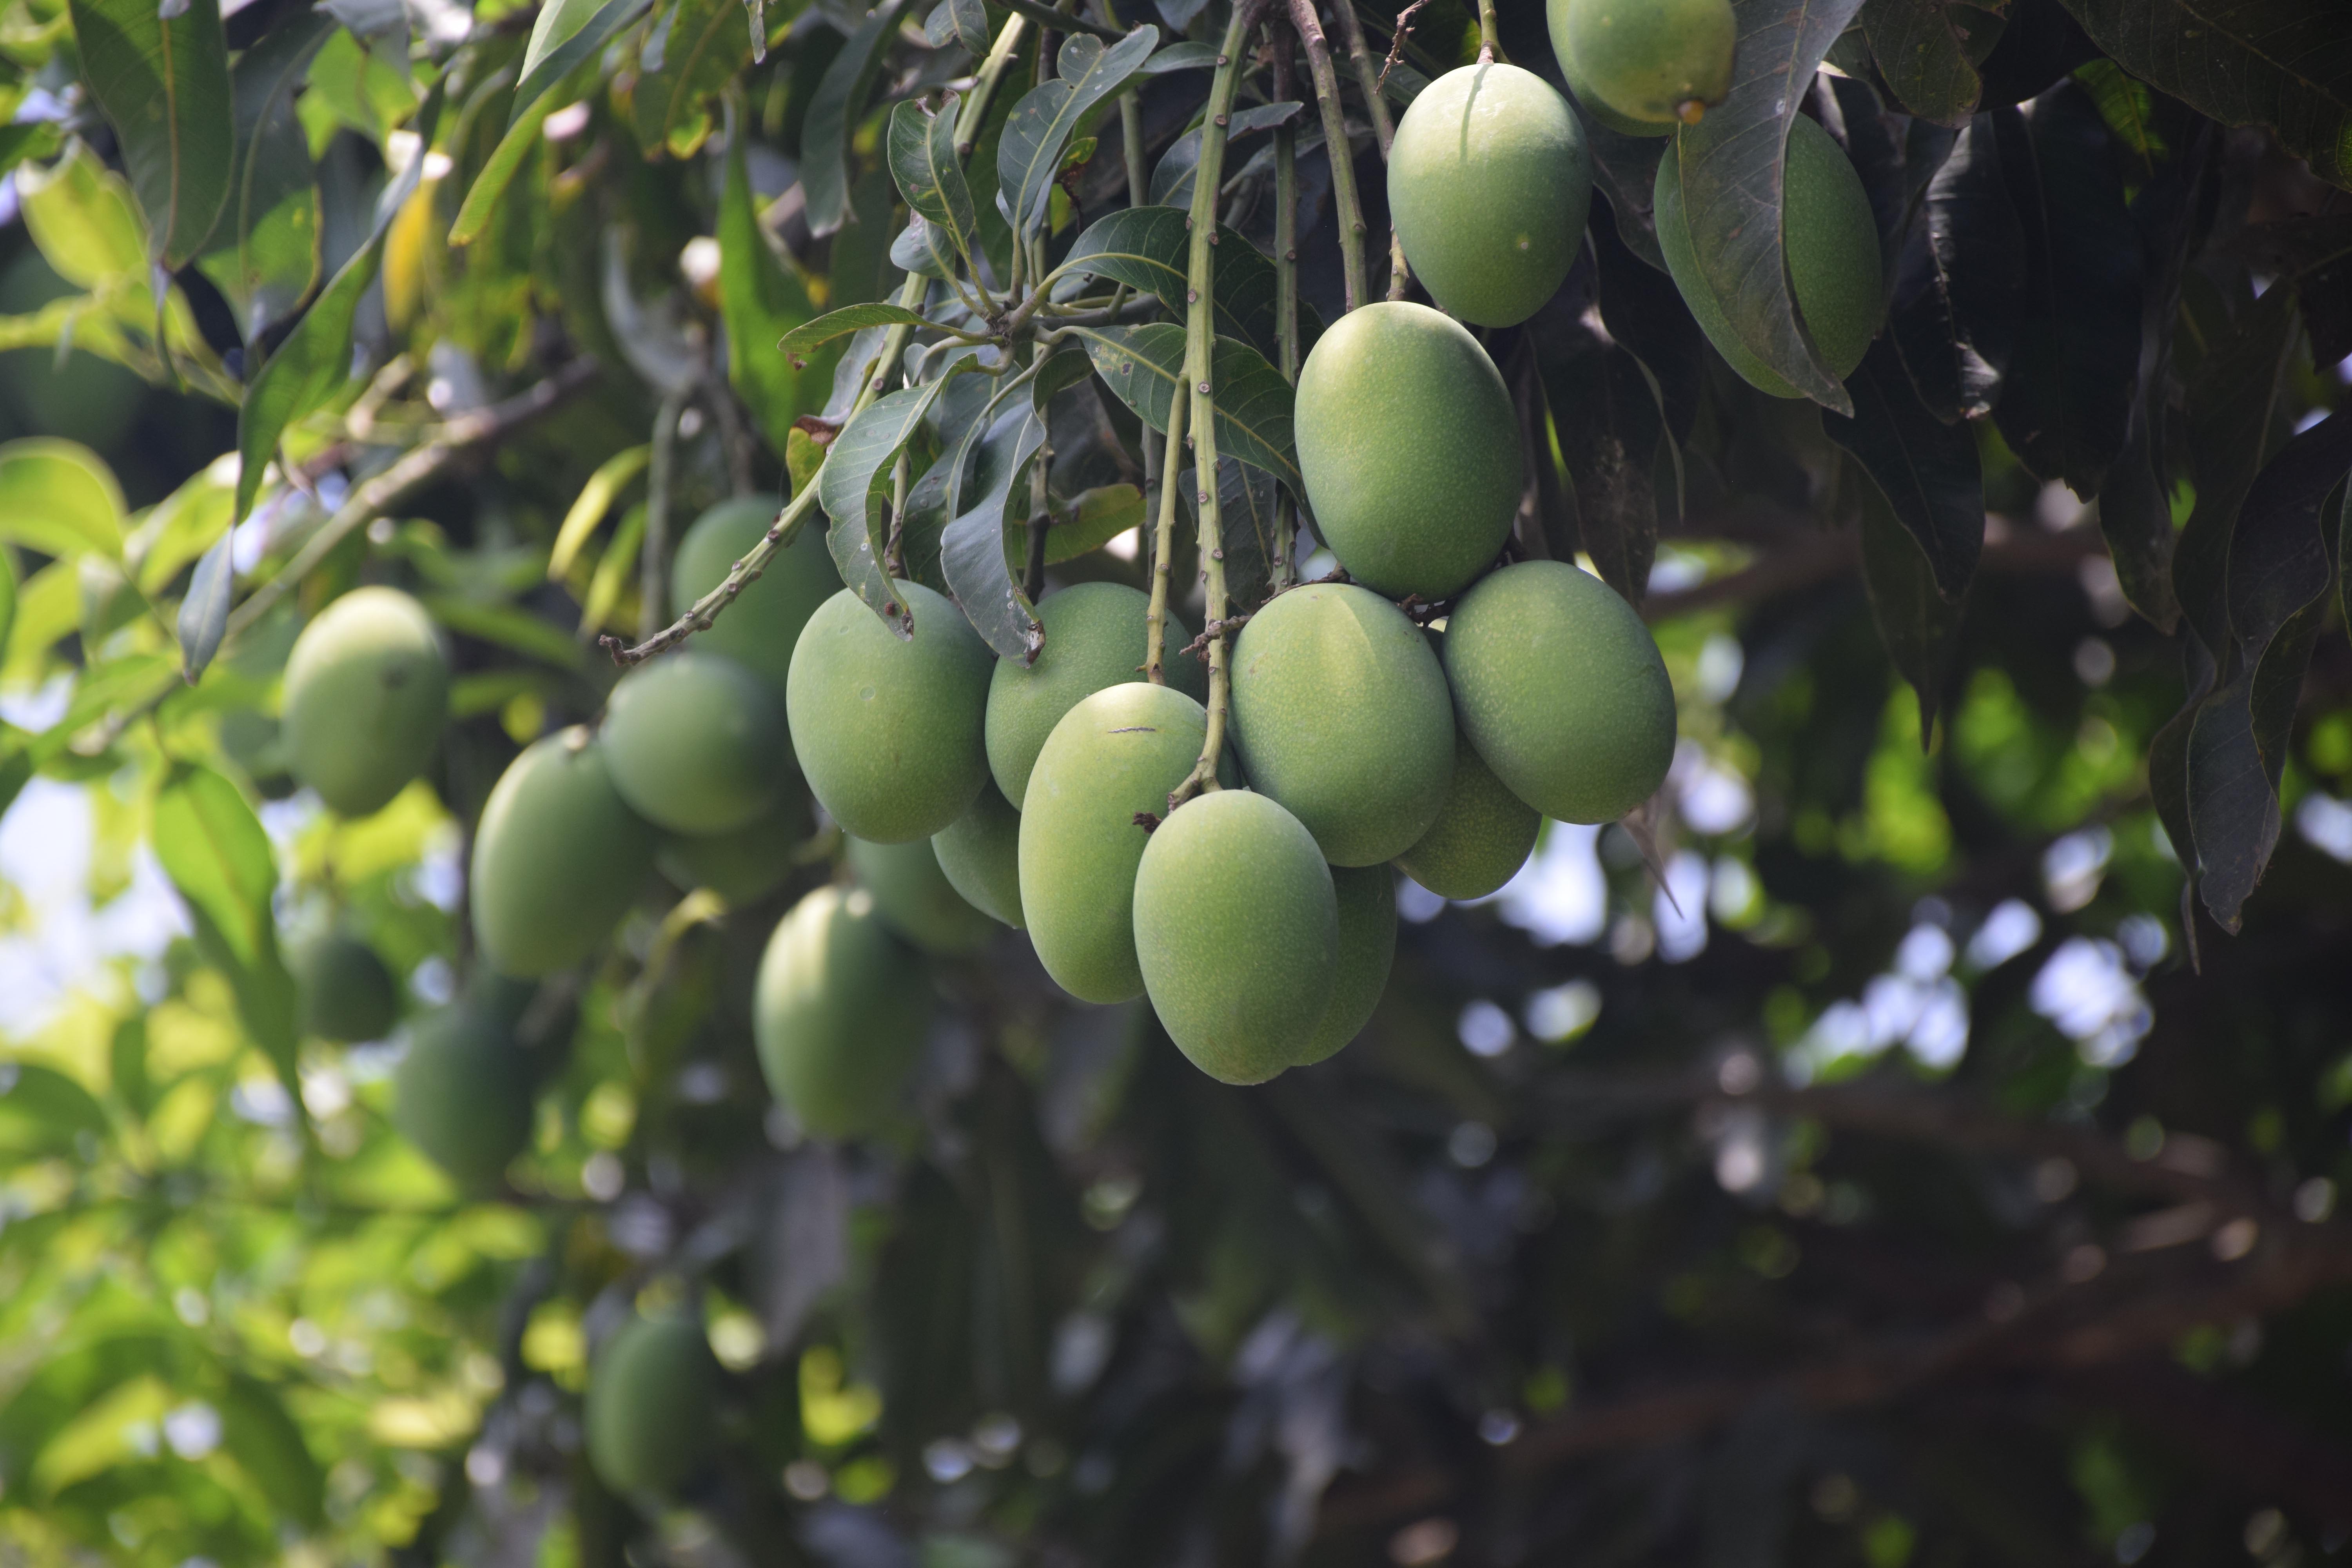 malda mango cultivation